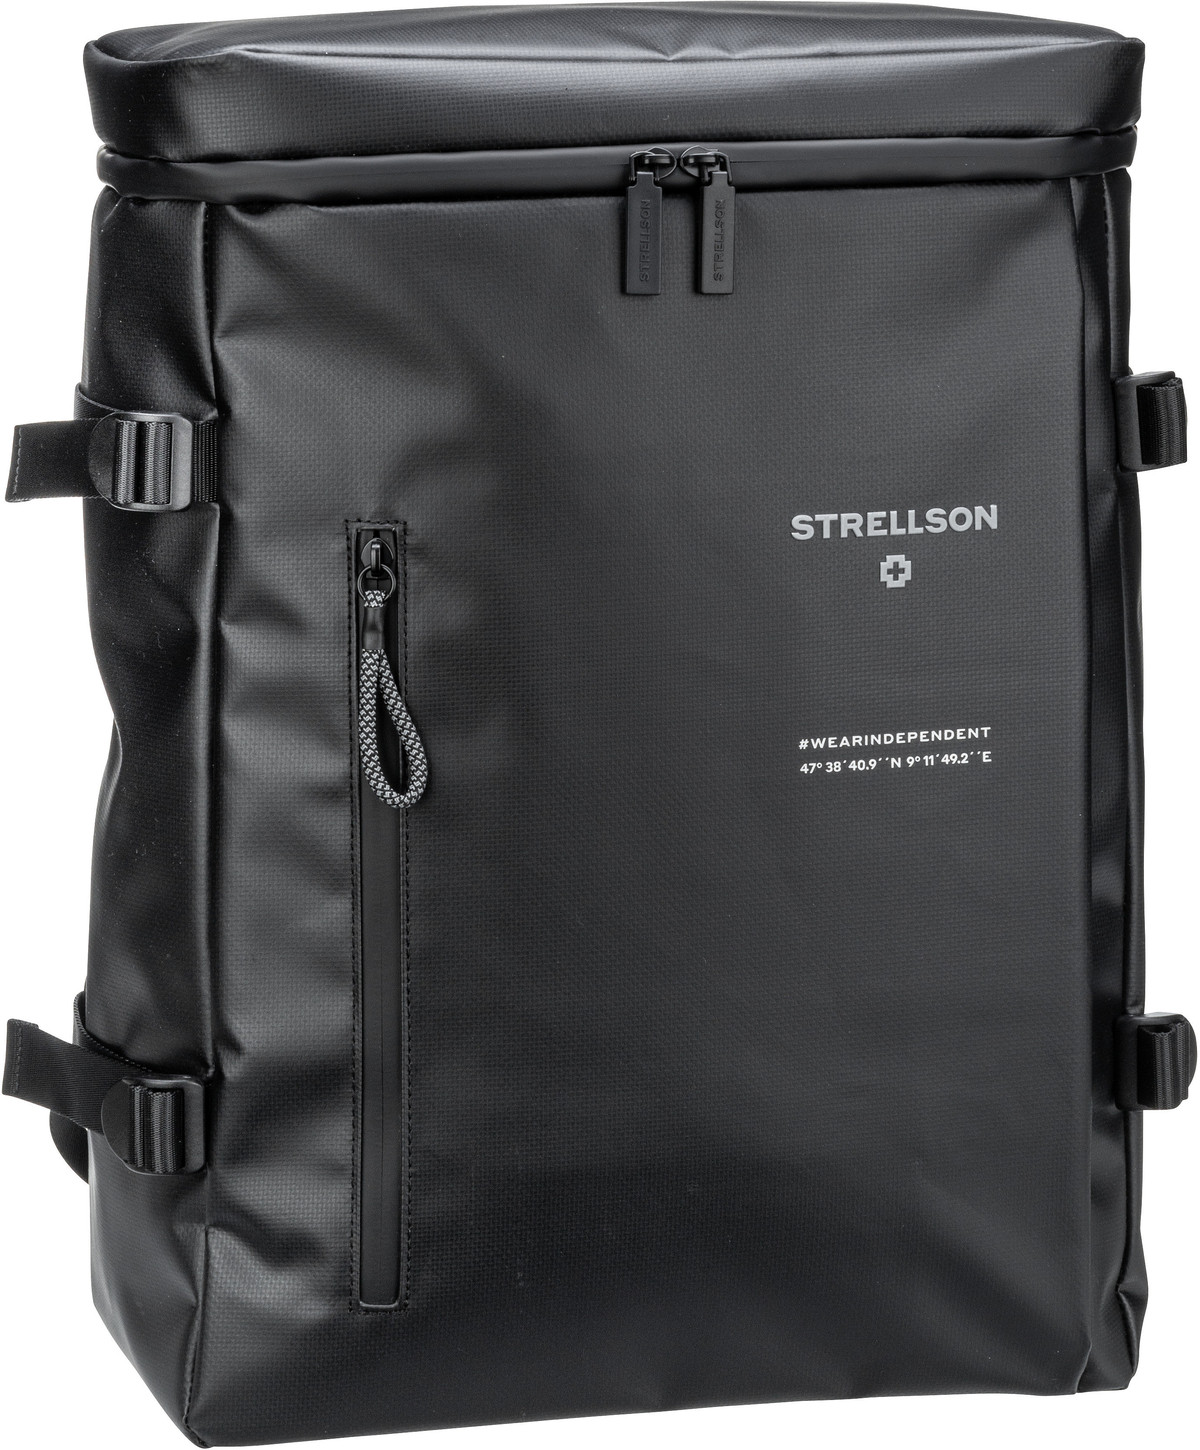 Strellson Strellson Stockwell 2.0 Hane Backpack LVZ in Schwarz (28.4 Liter), Rucksack / Backpack